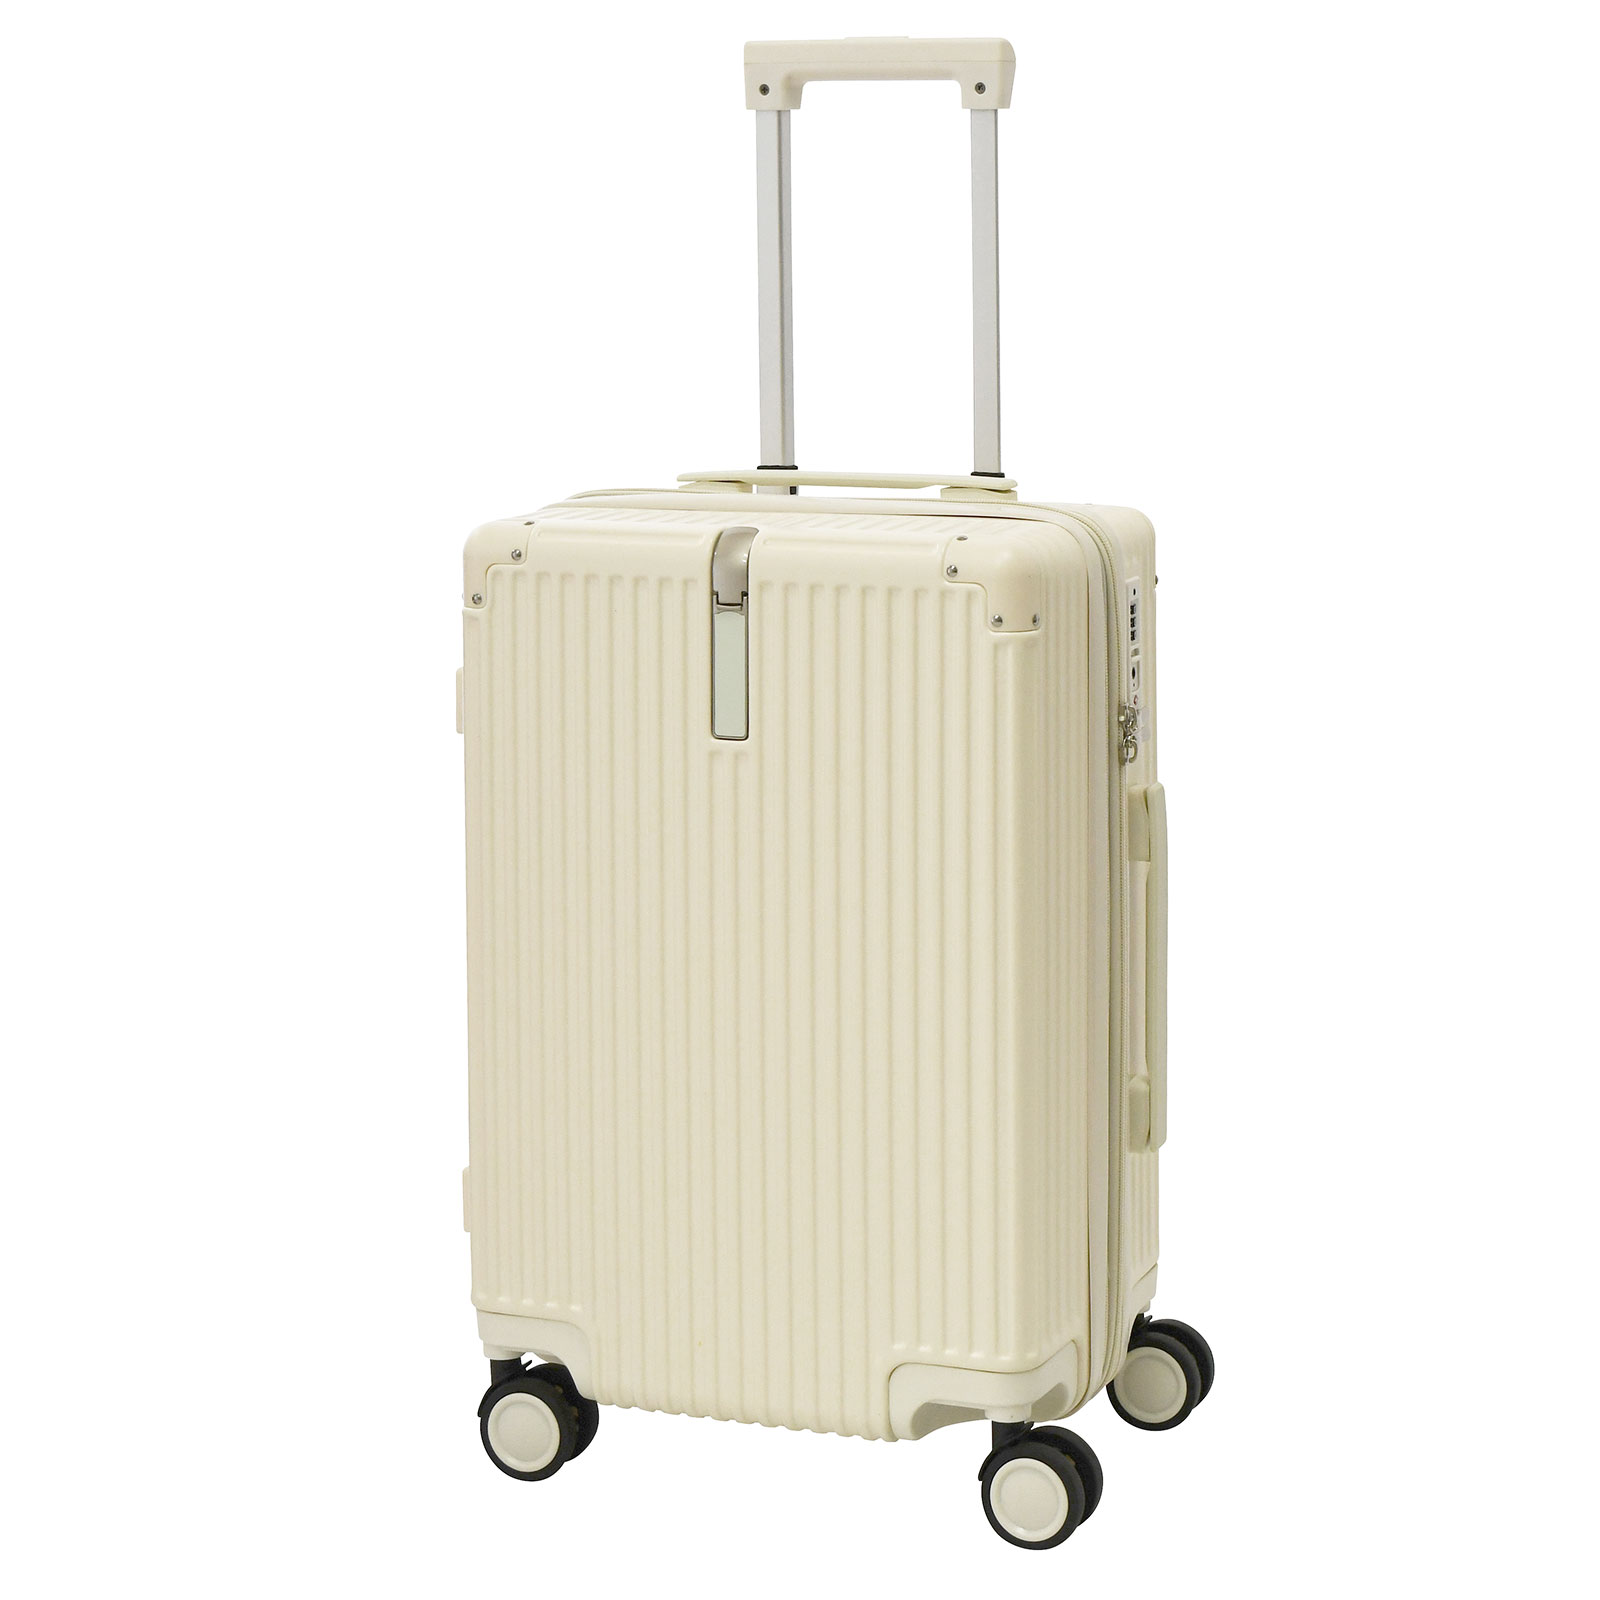 キャリーケース sサイズ スーツケース 機内持ち込み 容量32L Sサイズ 拡張 キャリーバッグ T...